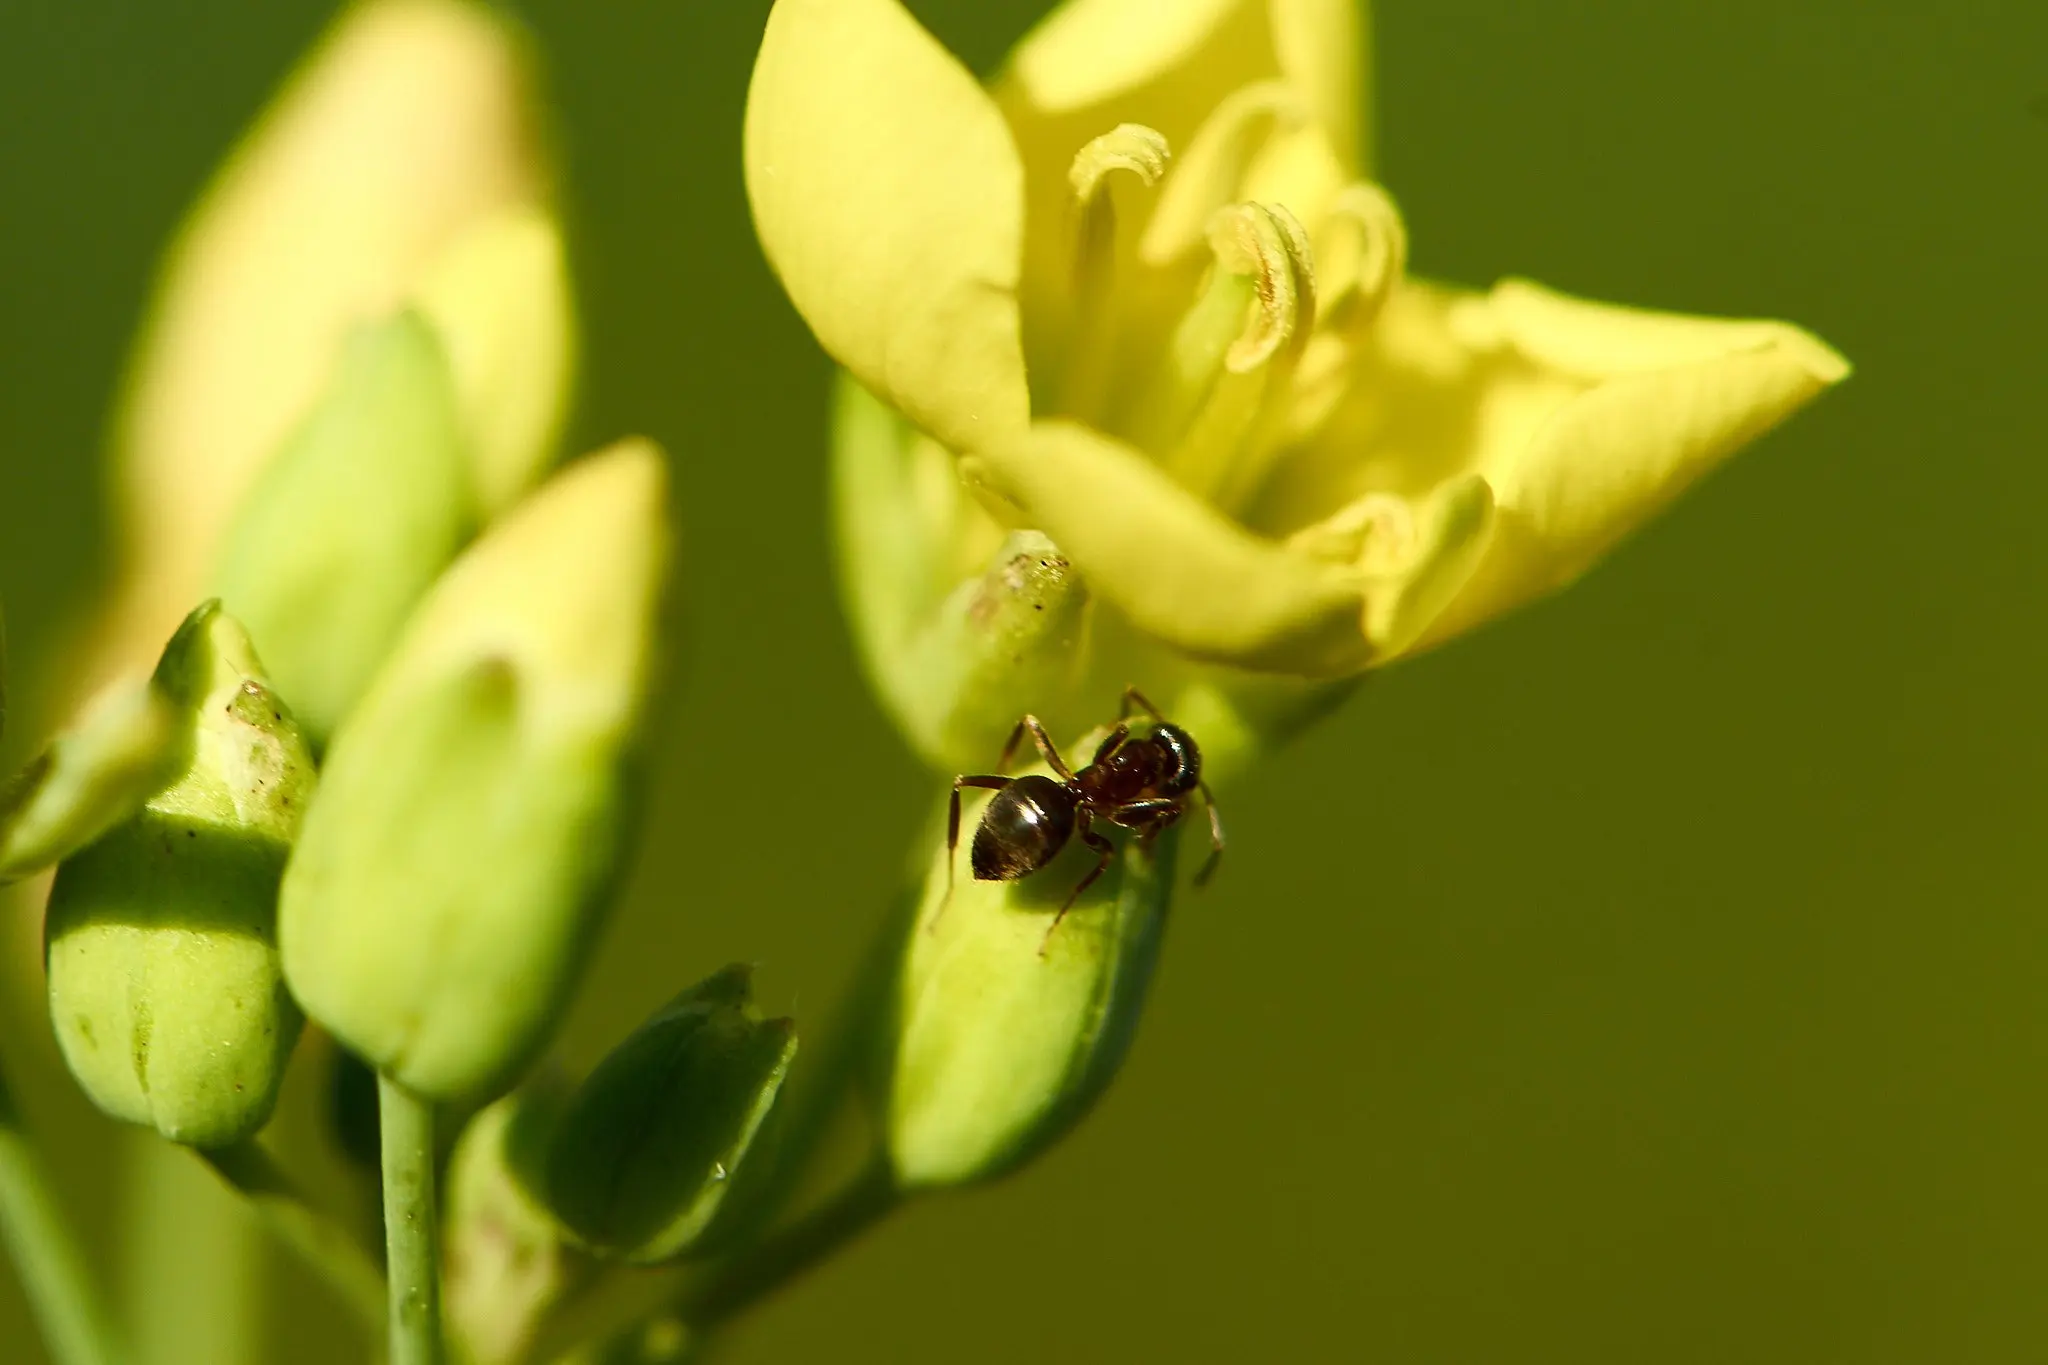 Ameise auf gelber Blüte